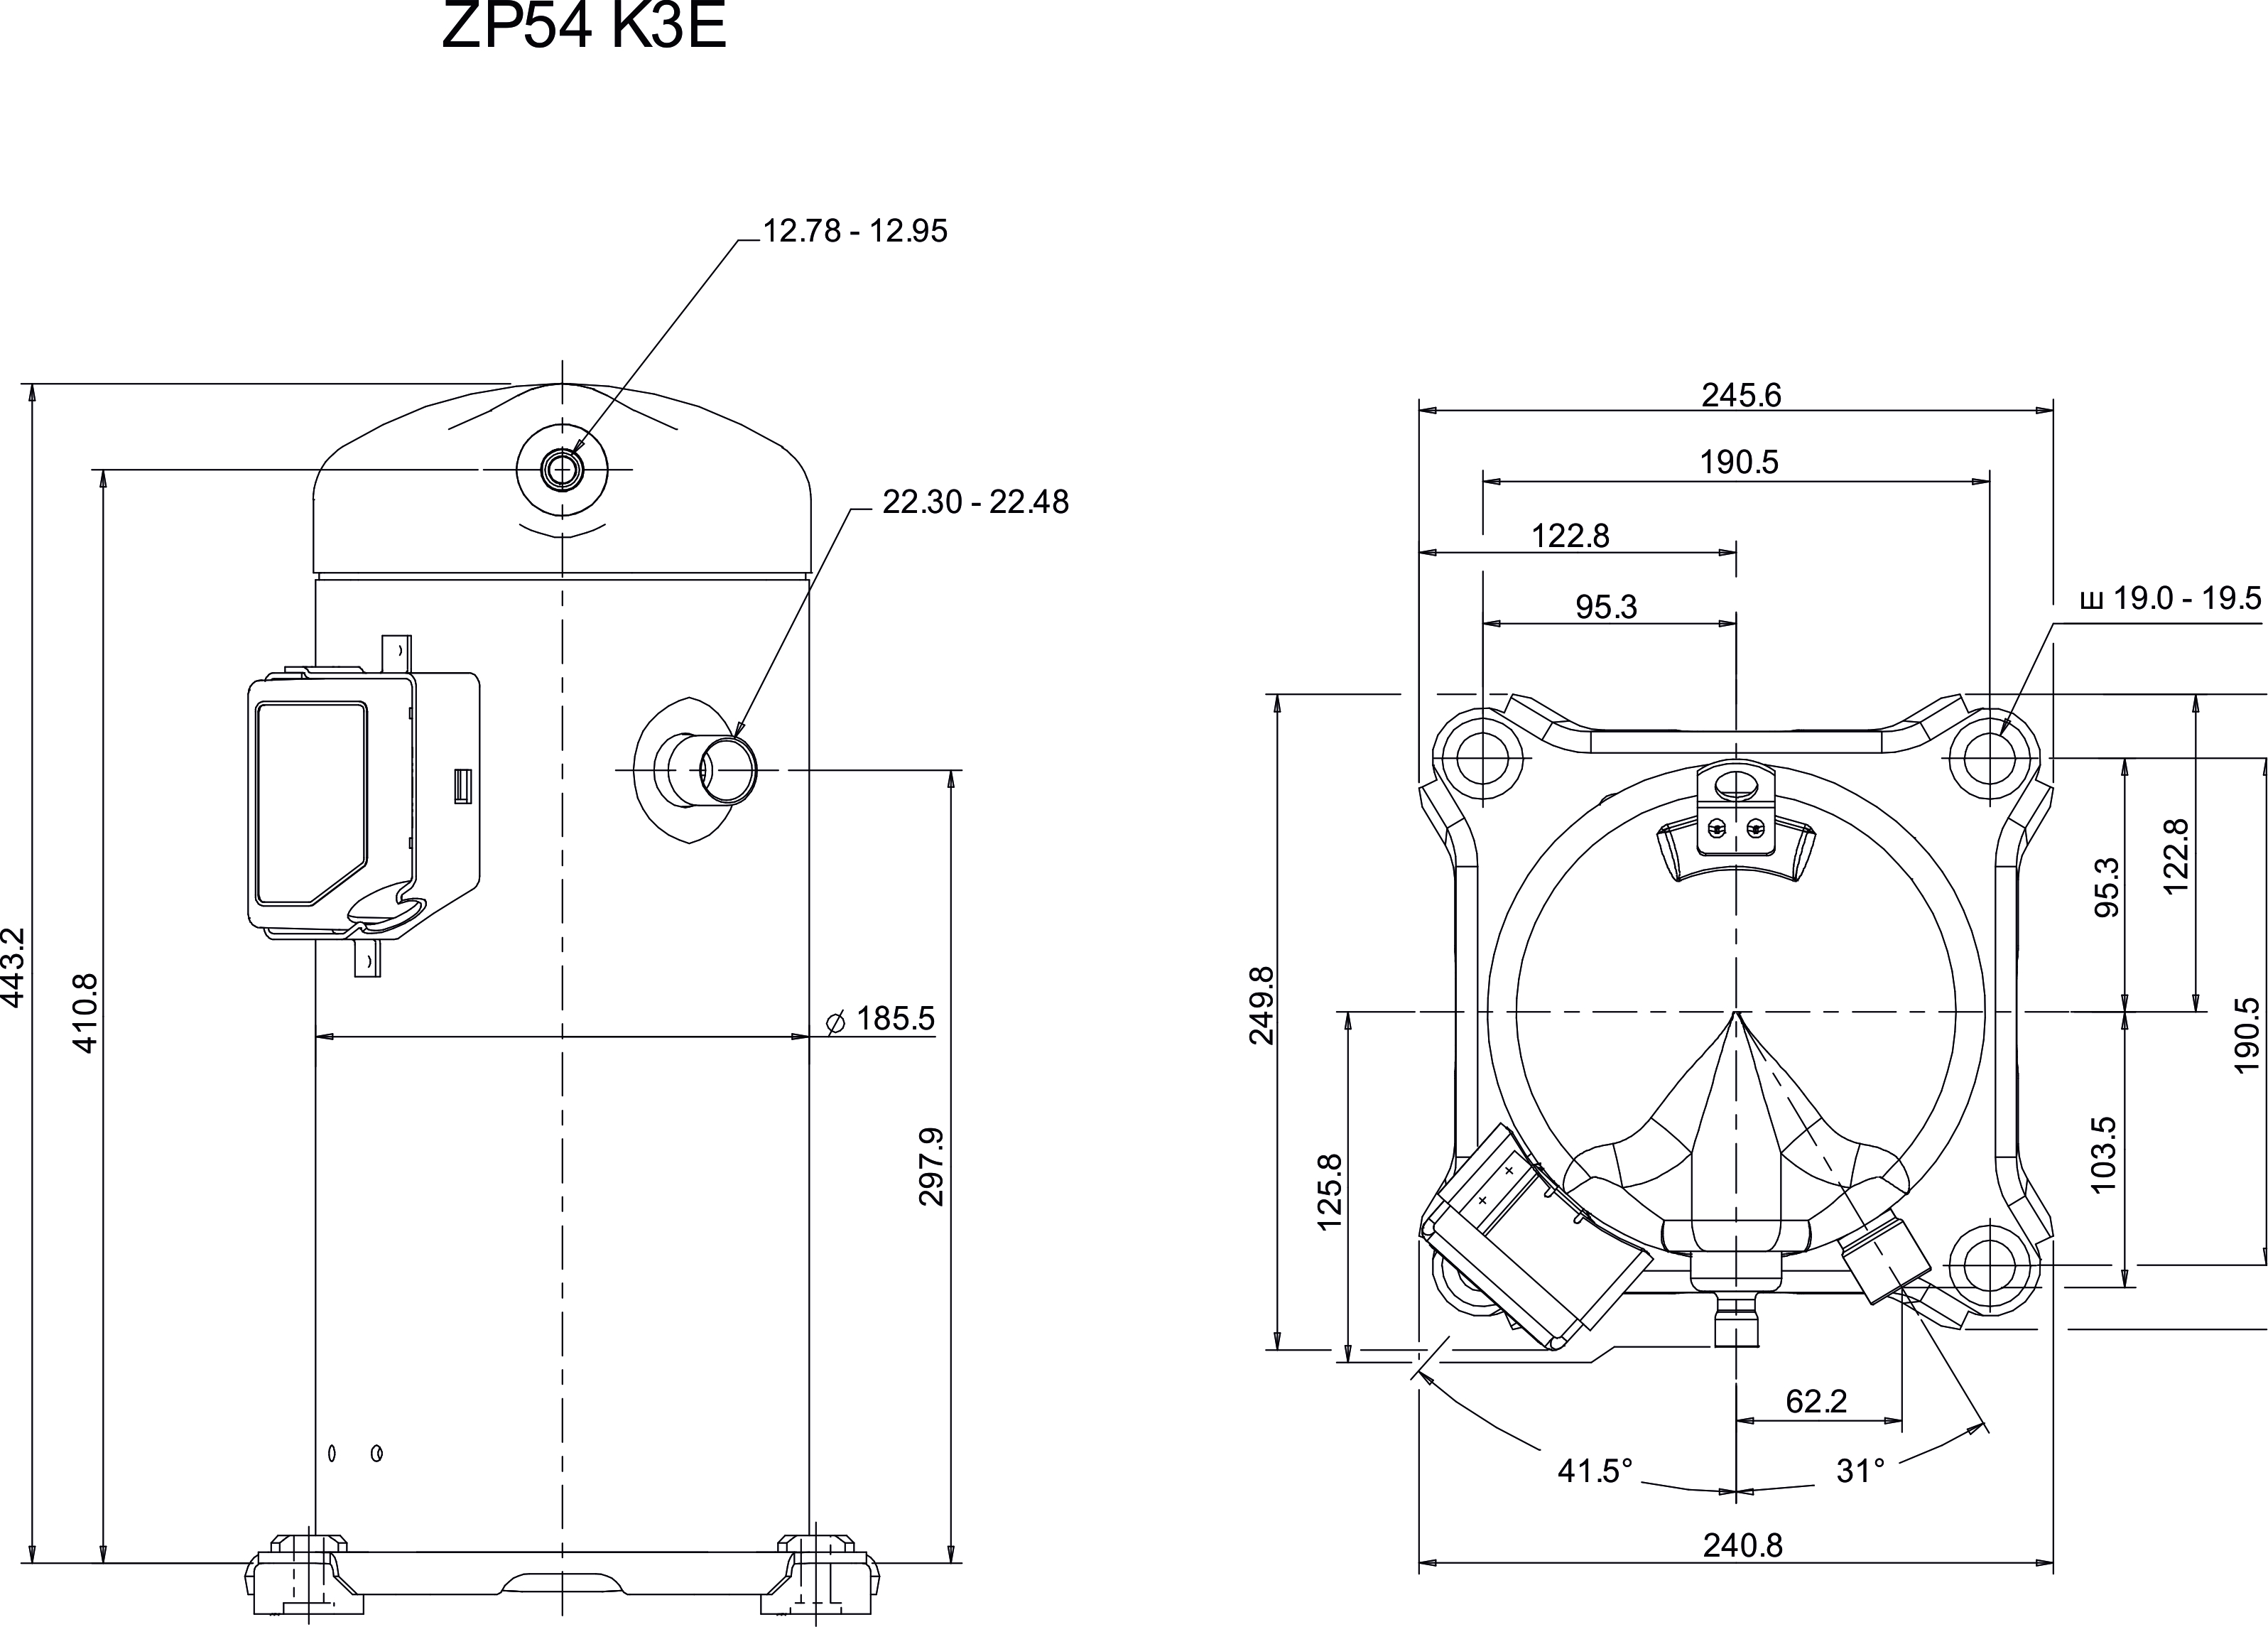 Герметичный спиральный компрессор Copeland Scroll ZP54K3E